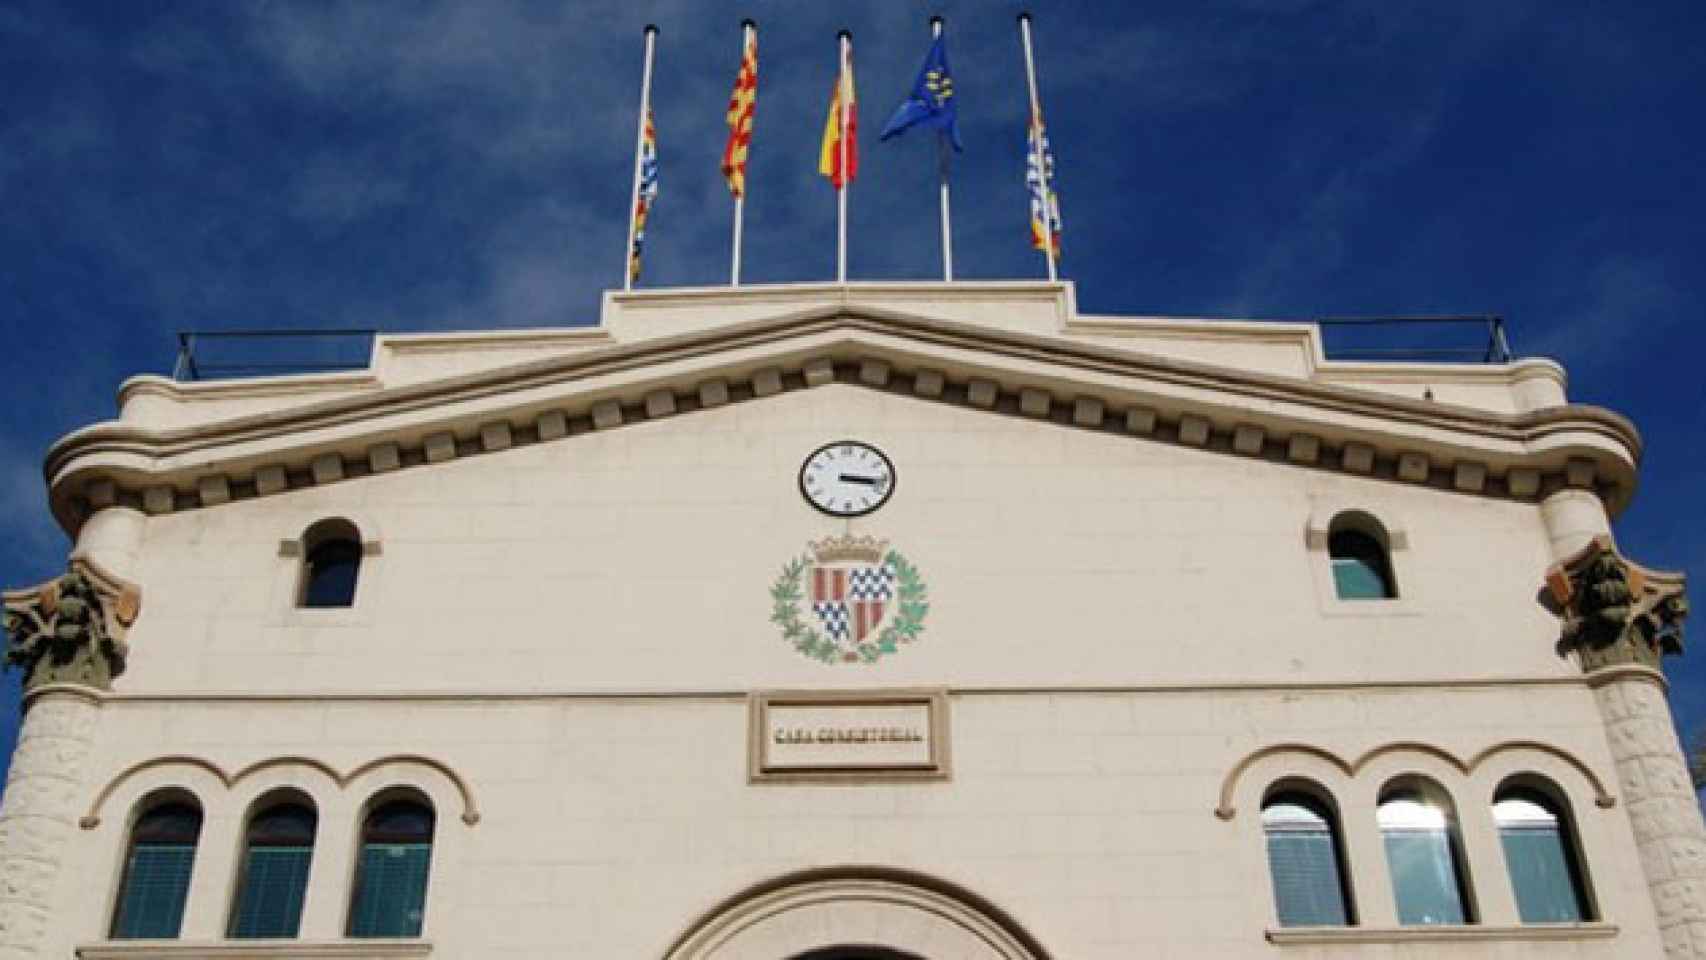 La fachada del Ayuntamiento de Badalona, en una imagen de archivo / AYUNTAMIENTO DE BADALONA